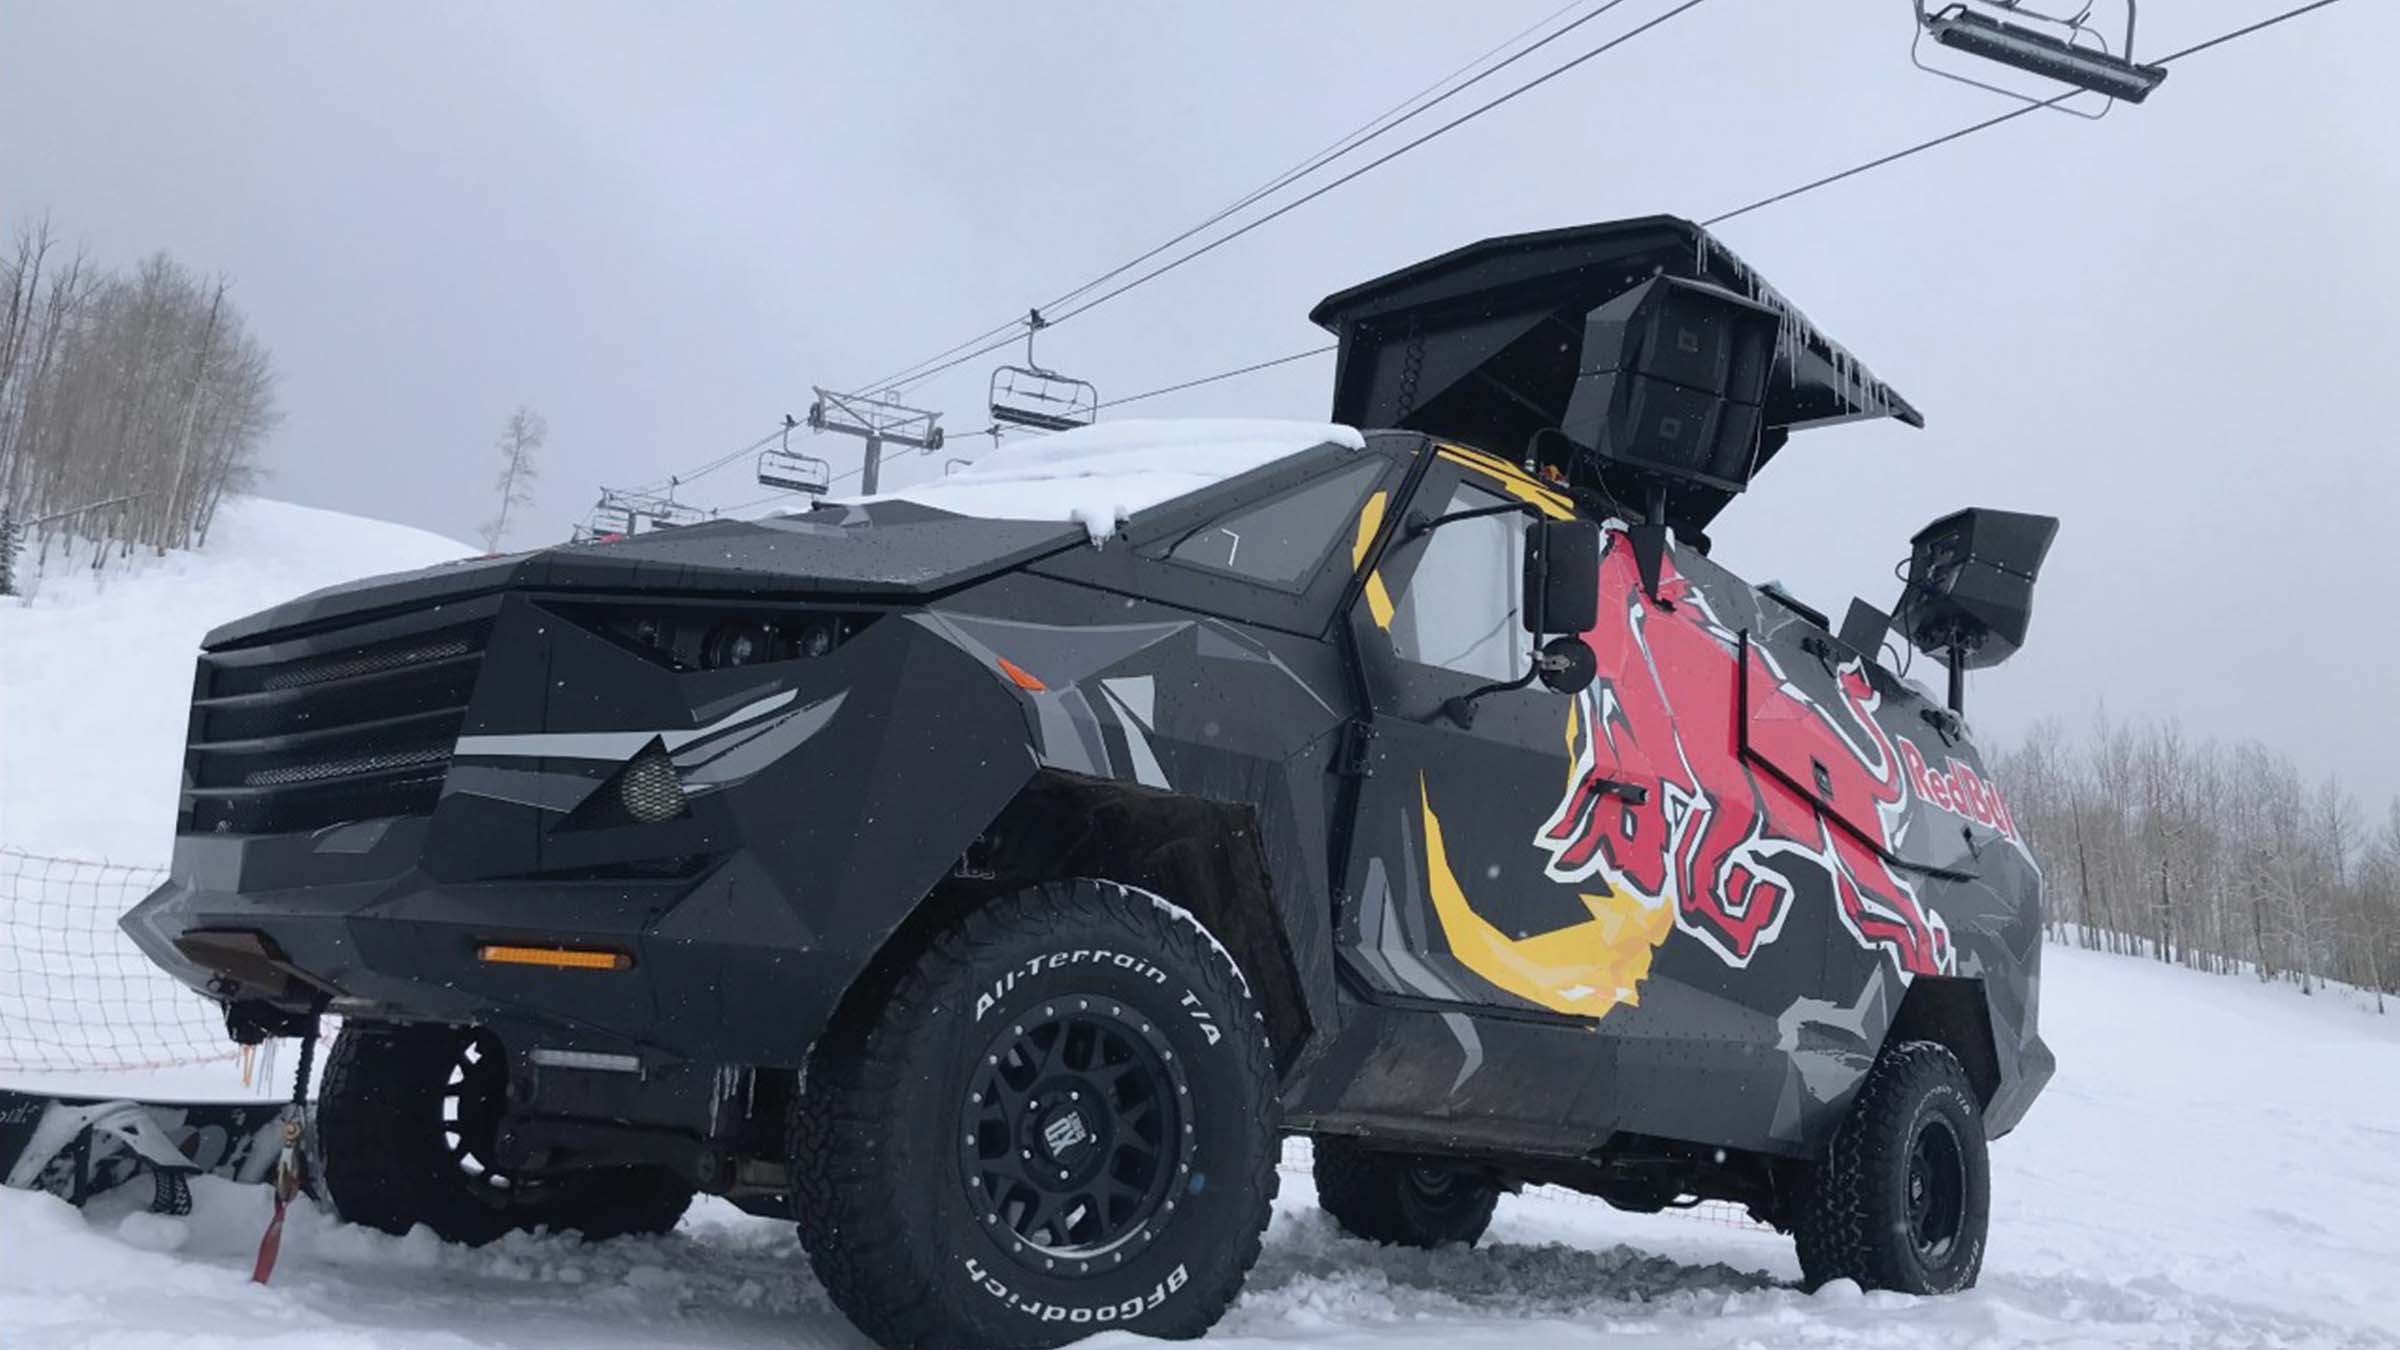 Red Bull Taurus event vehicle